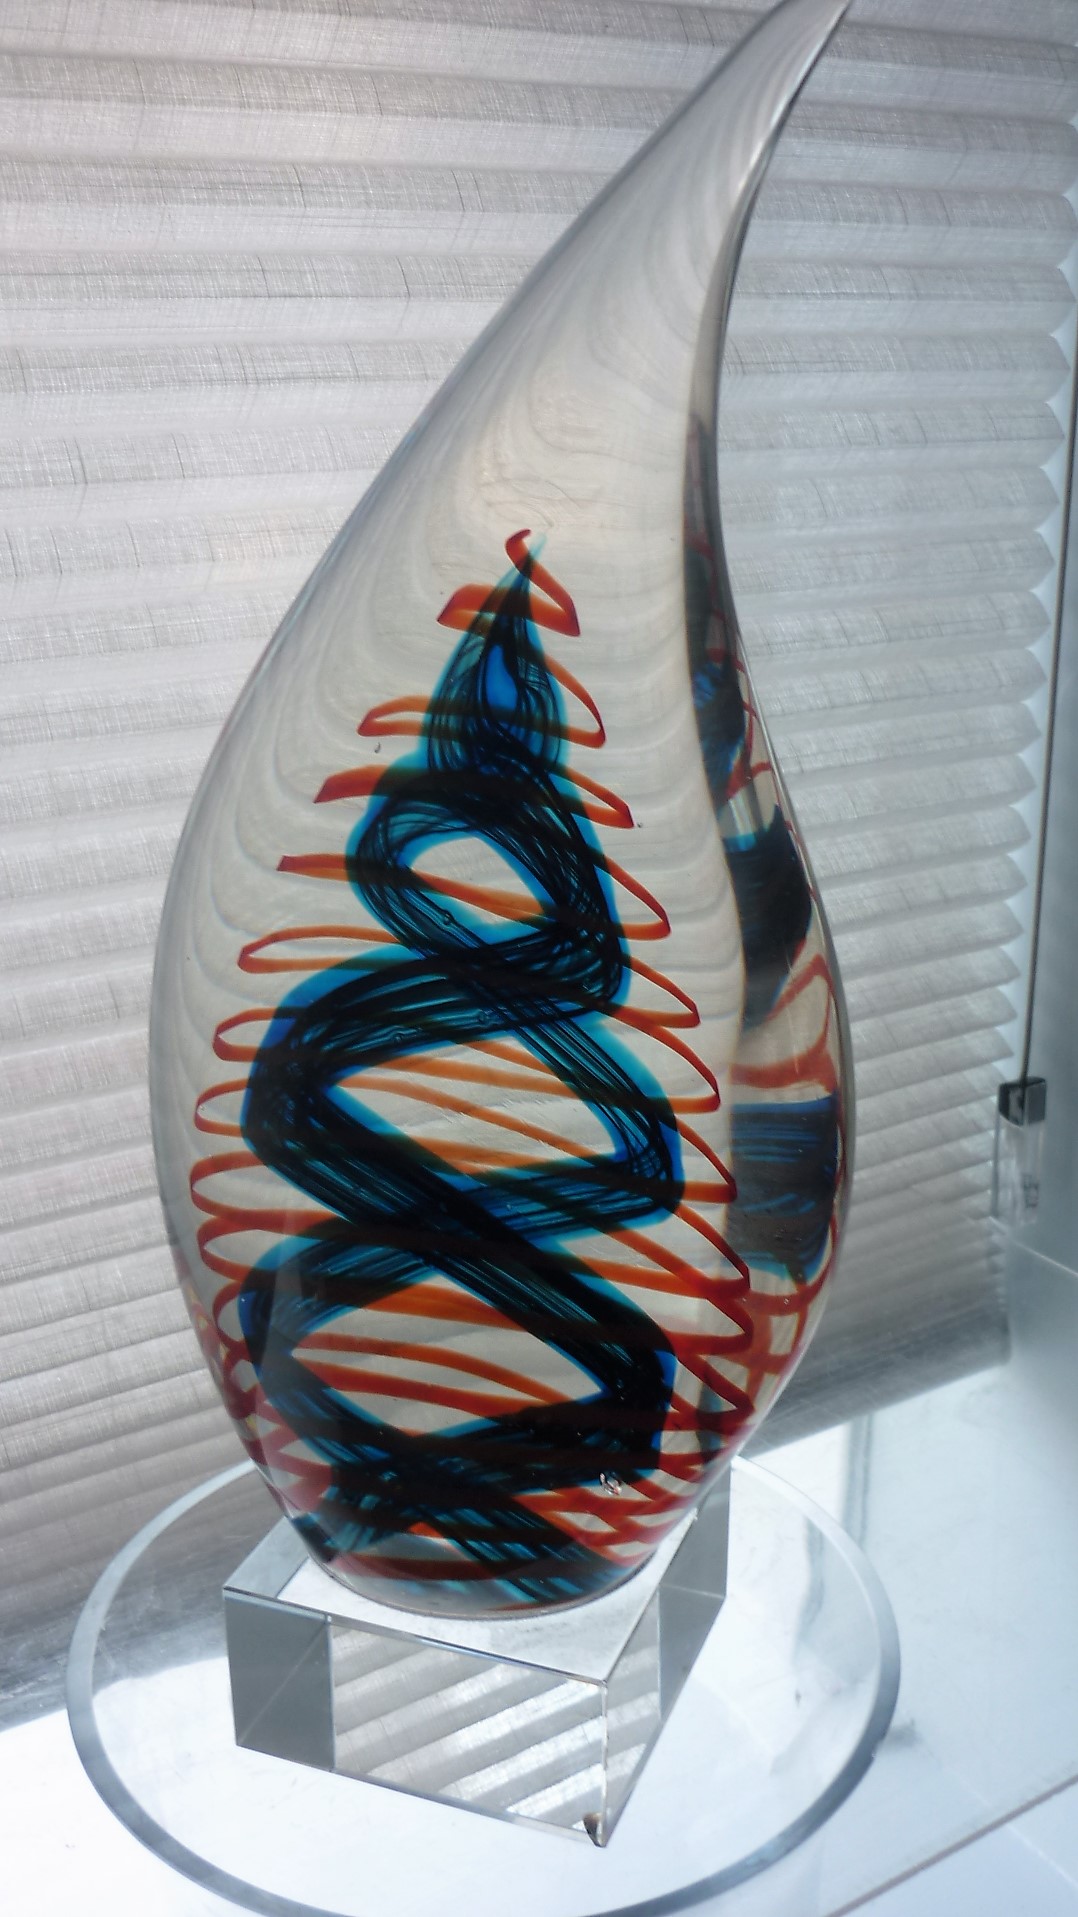 Stunning example of Czech Glass maker Adam Jabloski in the form of a tear drop glass sculpture.